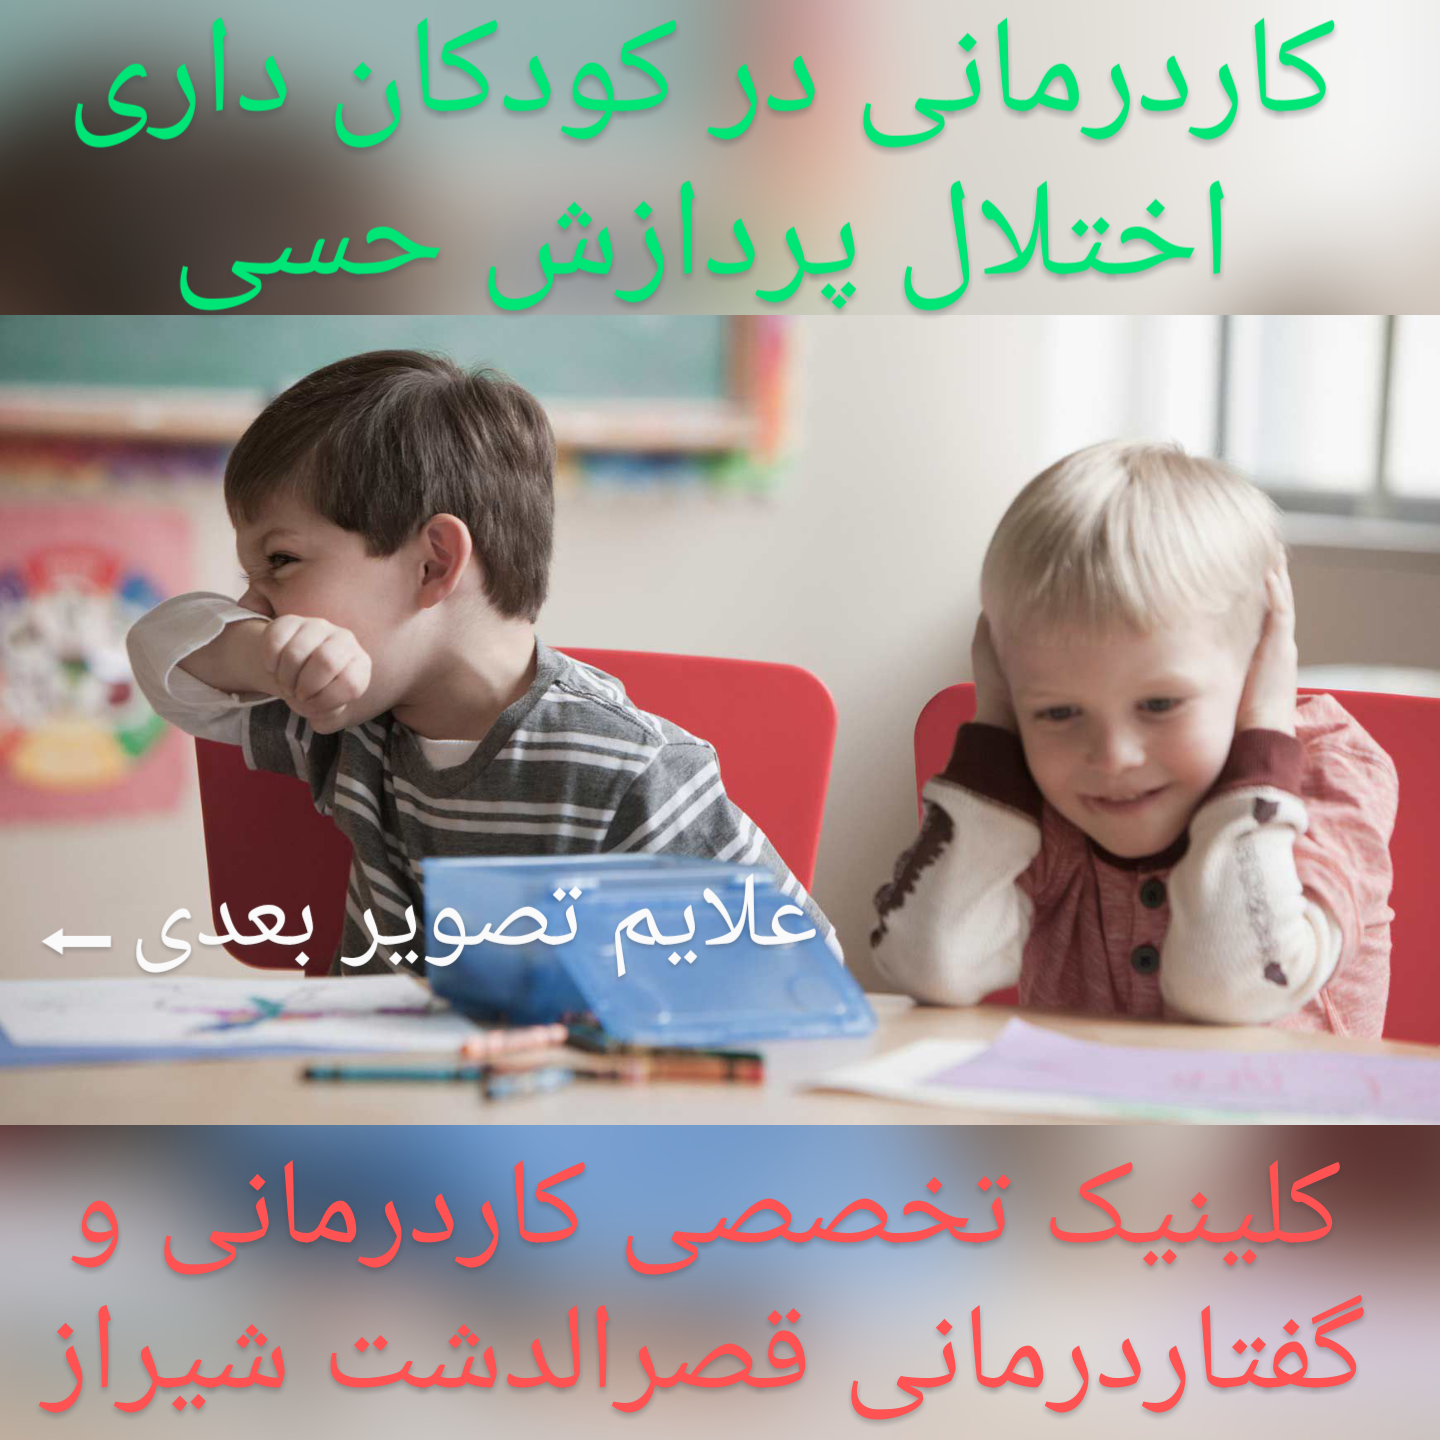 مرکز درمان اختلالات پردازش حسی ،کاردرمانی تخصصی در شیراز